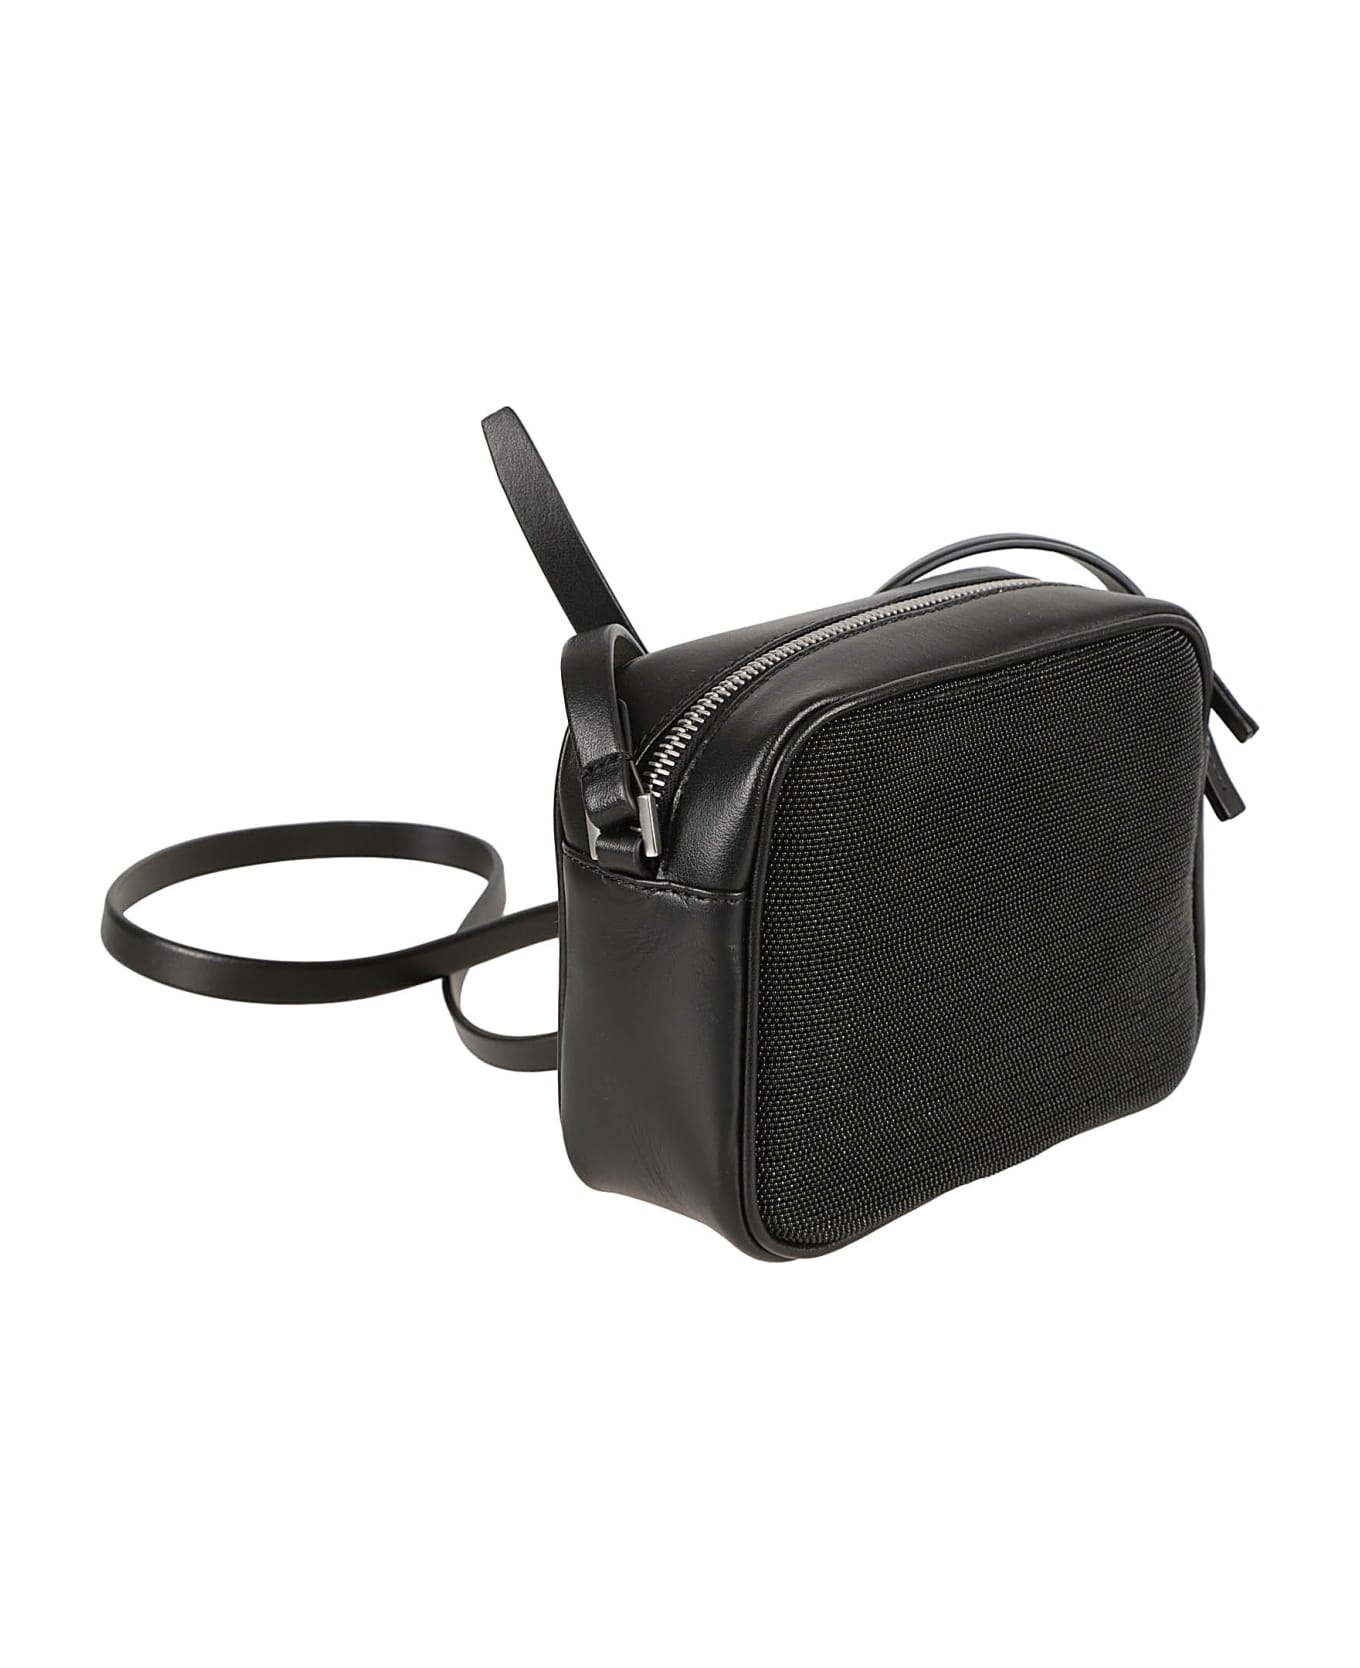 Fabiana Filippi Leather Camera Shoulder Bag - Black